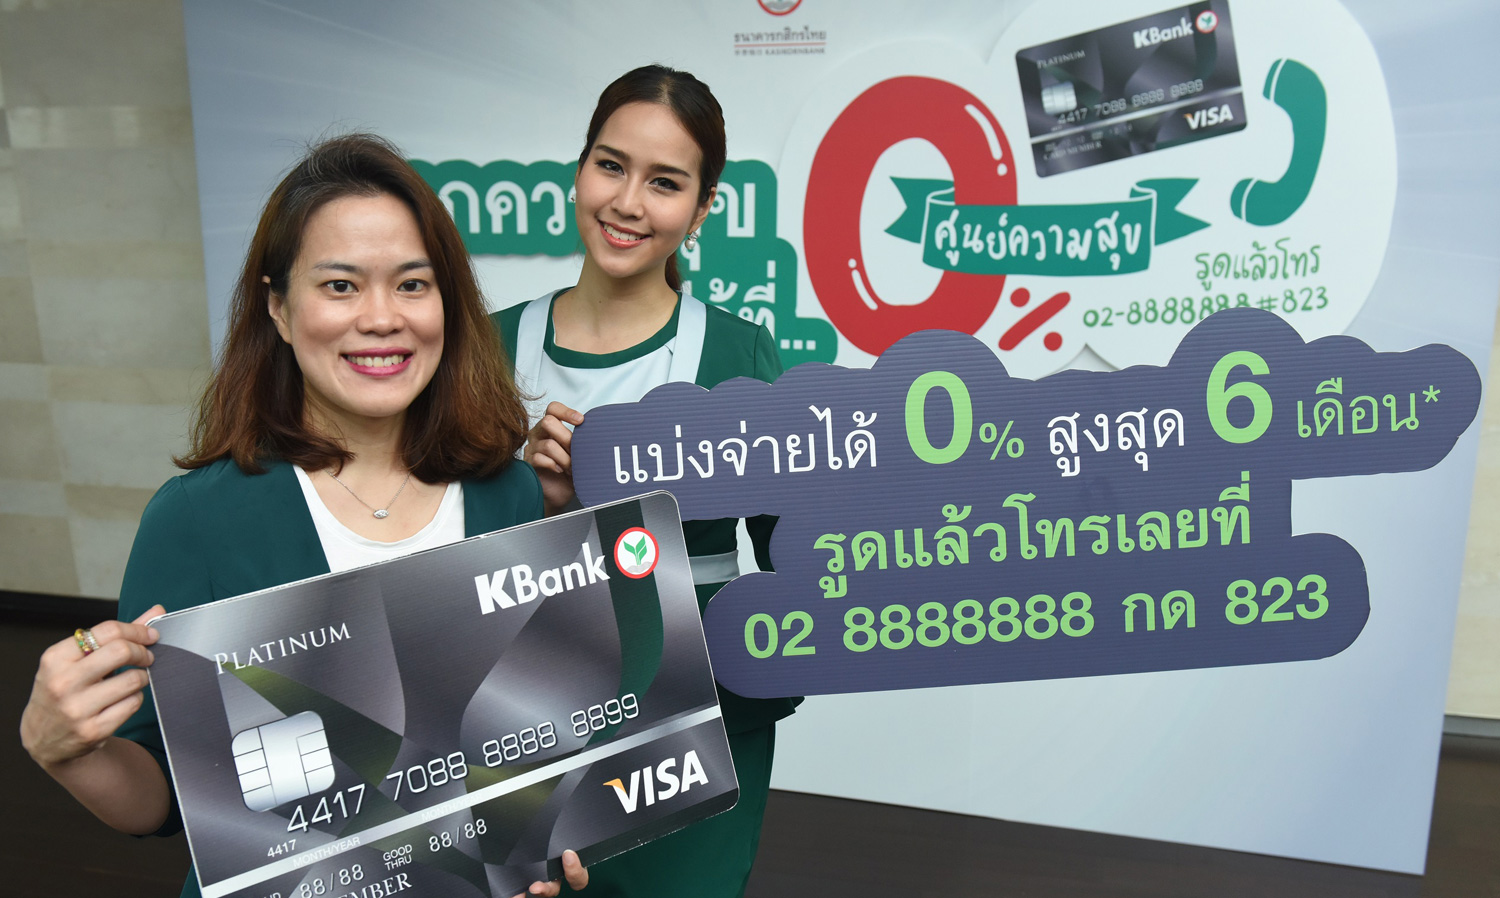 บัตรเครดิตกสิกรไทยออกแคมเปญศูนย์ความสุข ผ่อนทุกสิ่ง 0% นานสุด 6 เดือน